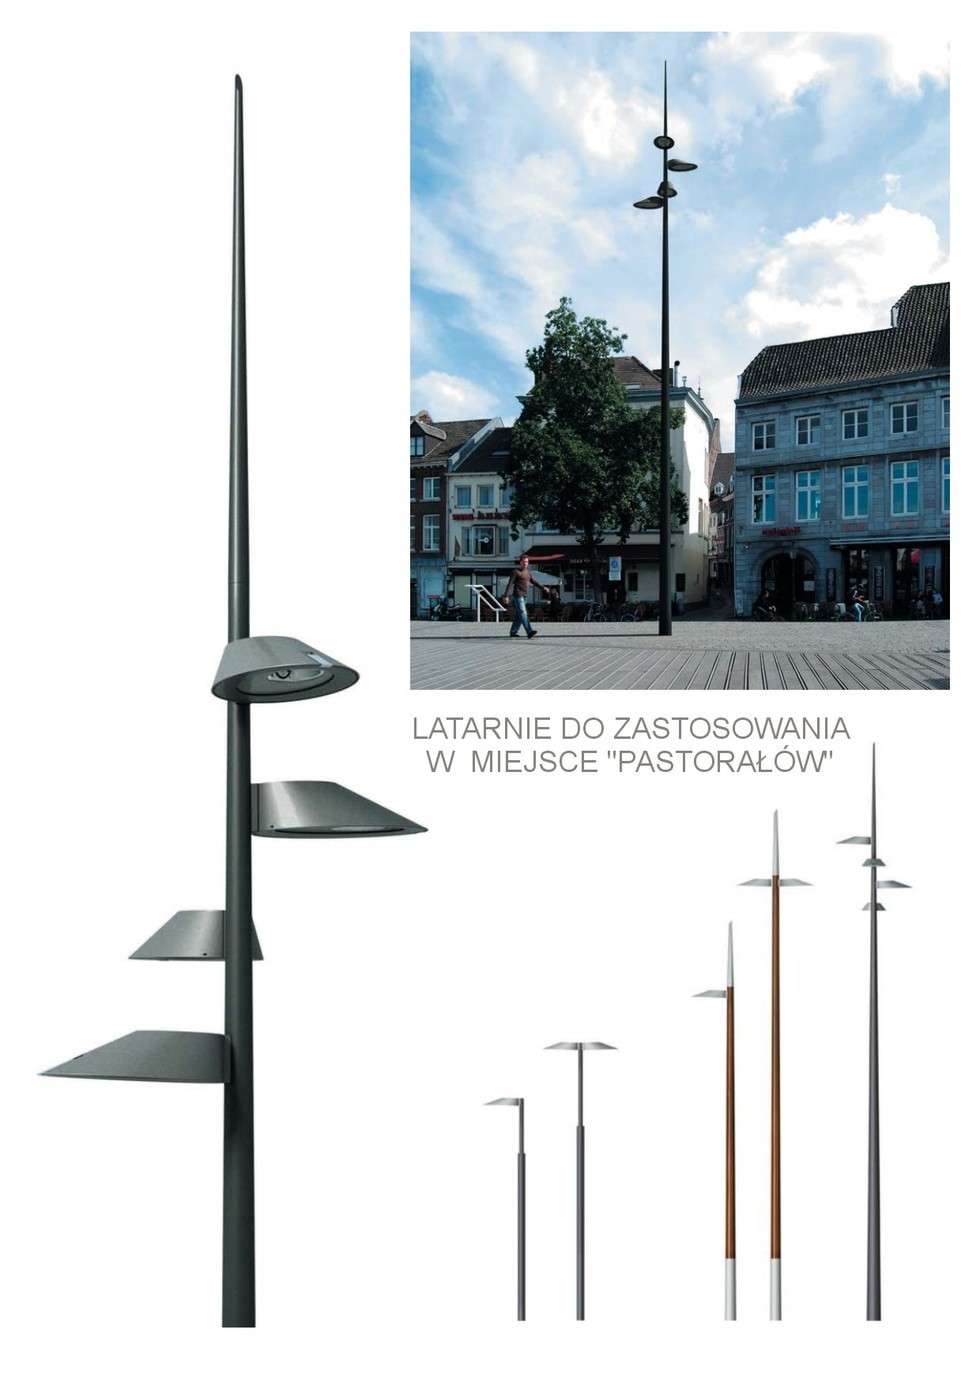  Takie latarnie proponują architekci w miejsce obecnych „pastorałów” znajdujących się m.in. przy Krakowskim Przedmieściu.